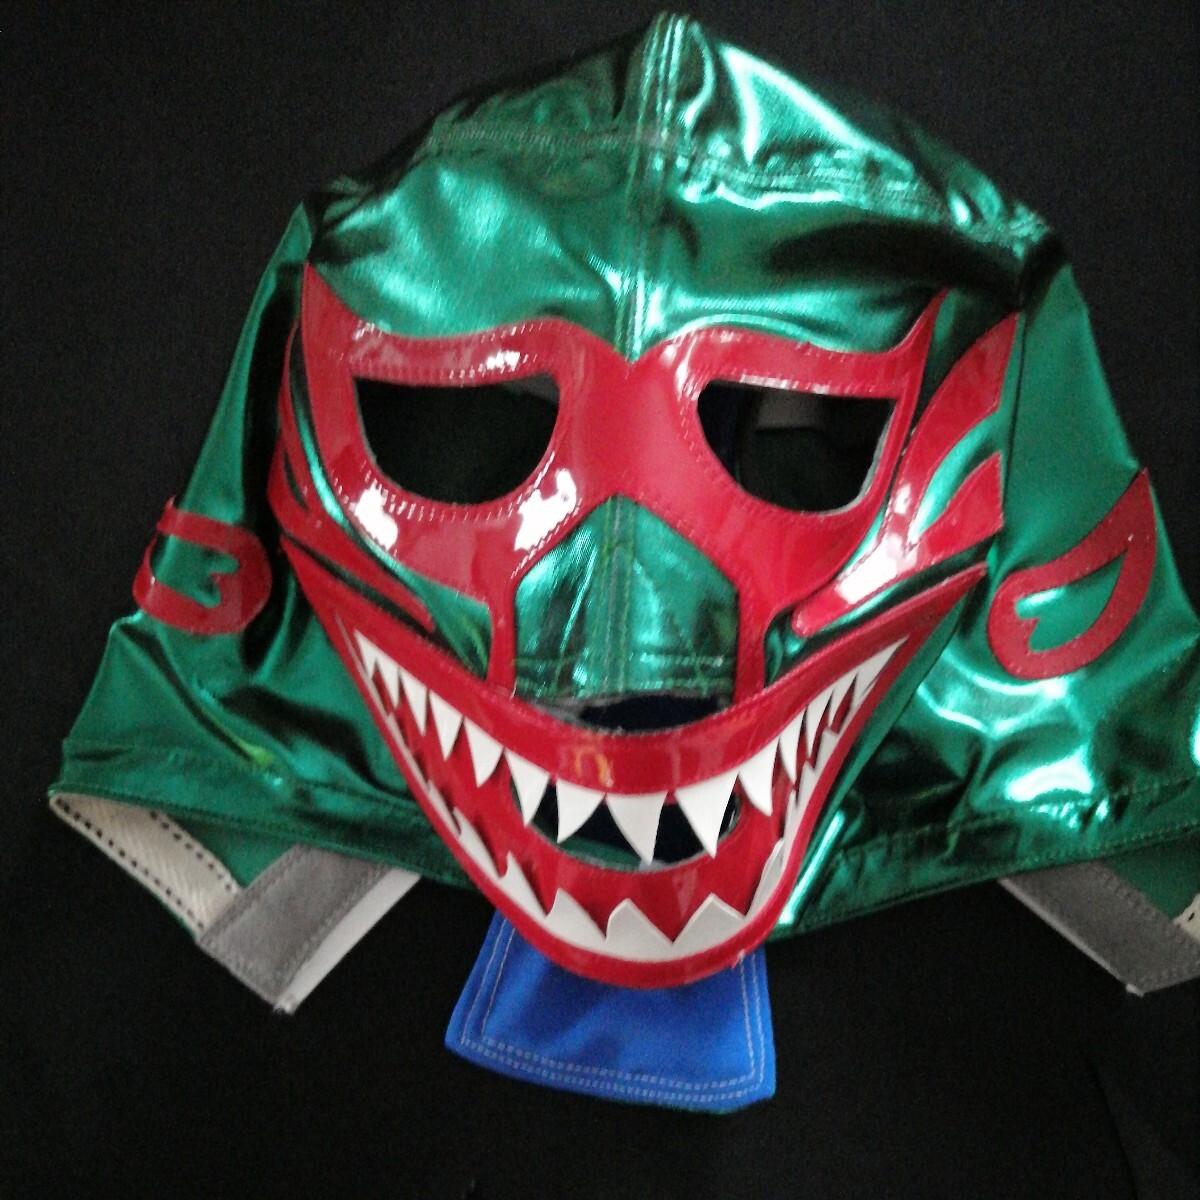  Mill * тушь для ресниц s зеленый особый .. over маска meki олень n маска легенда Showa Retro 